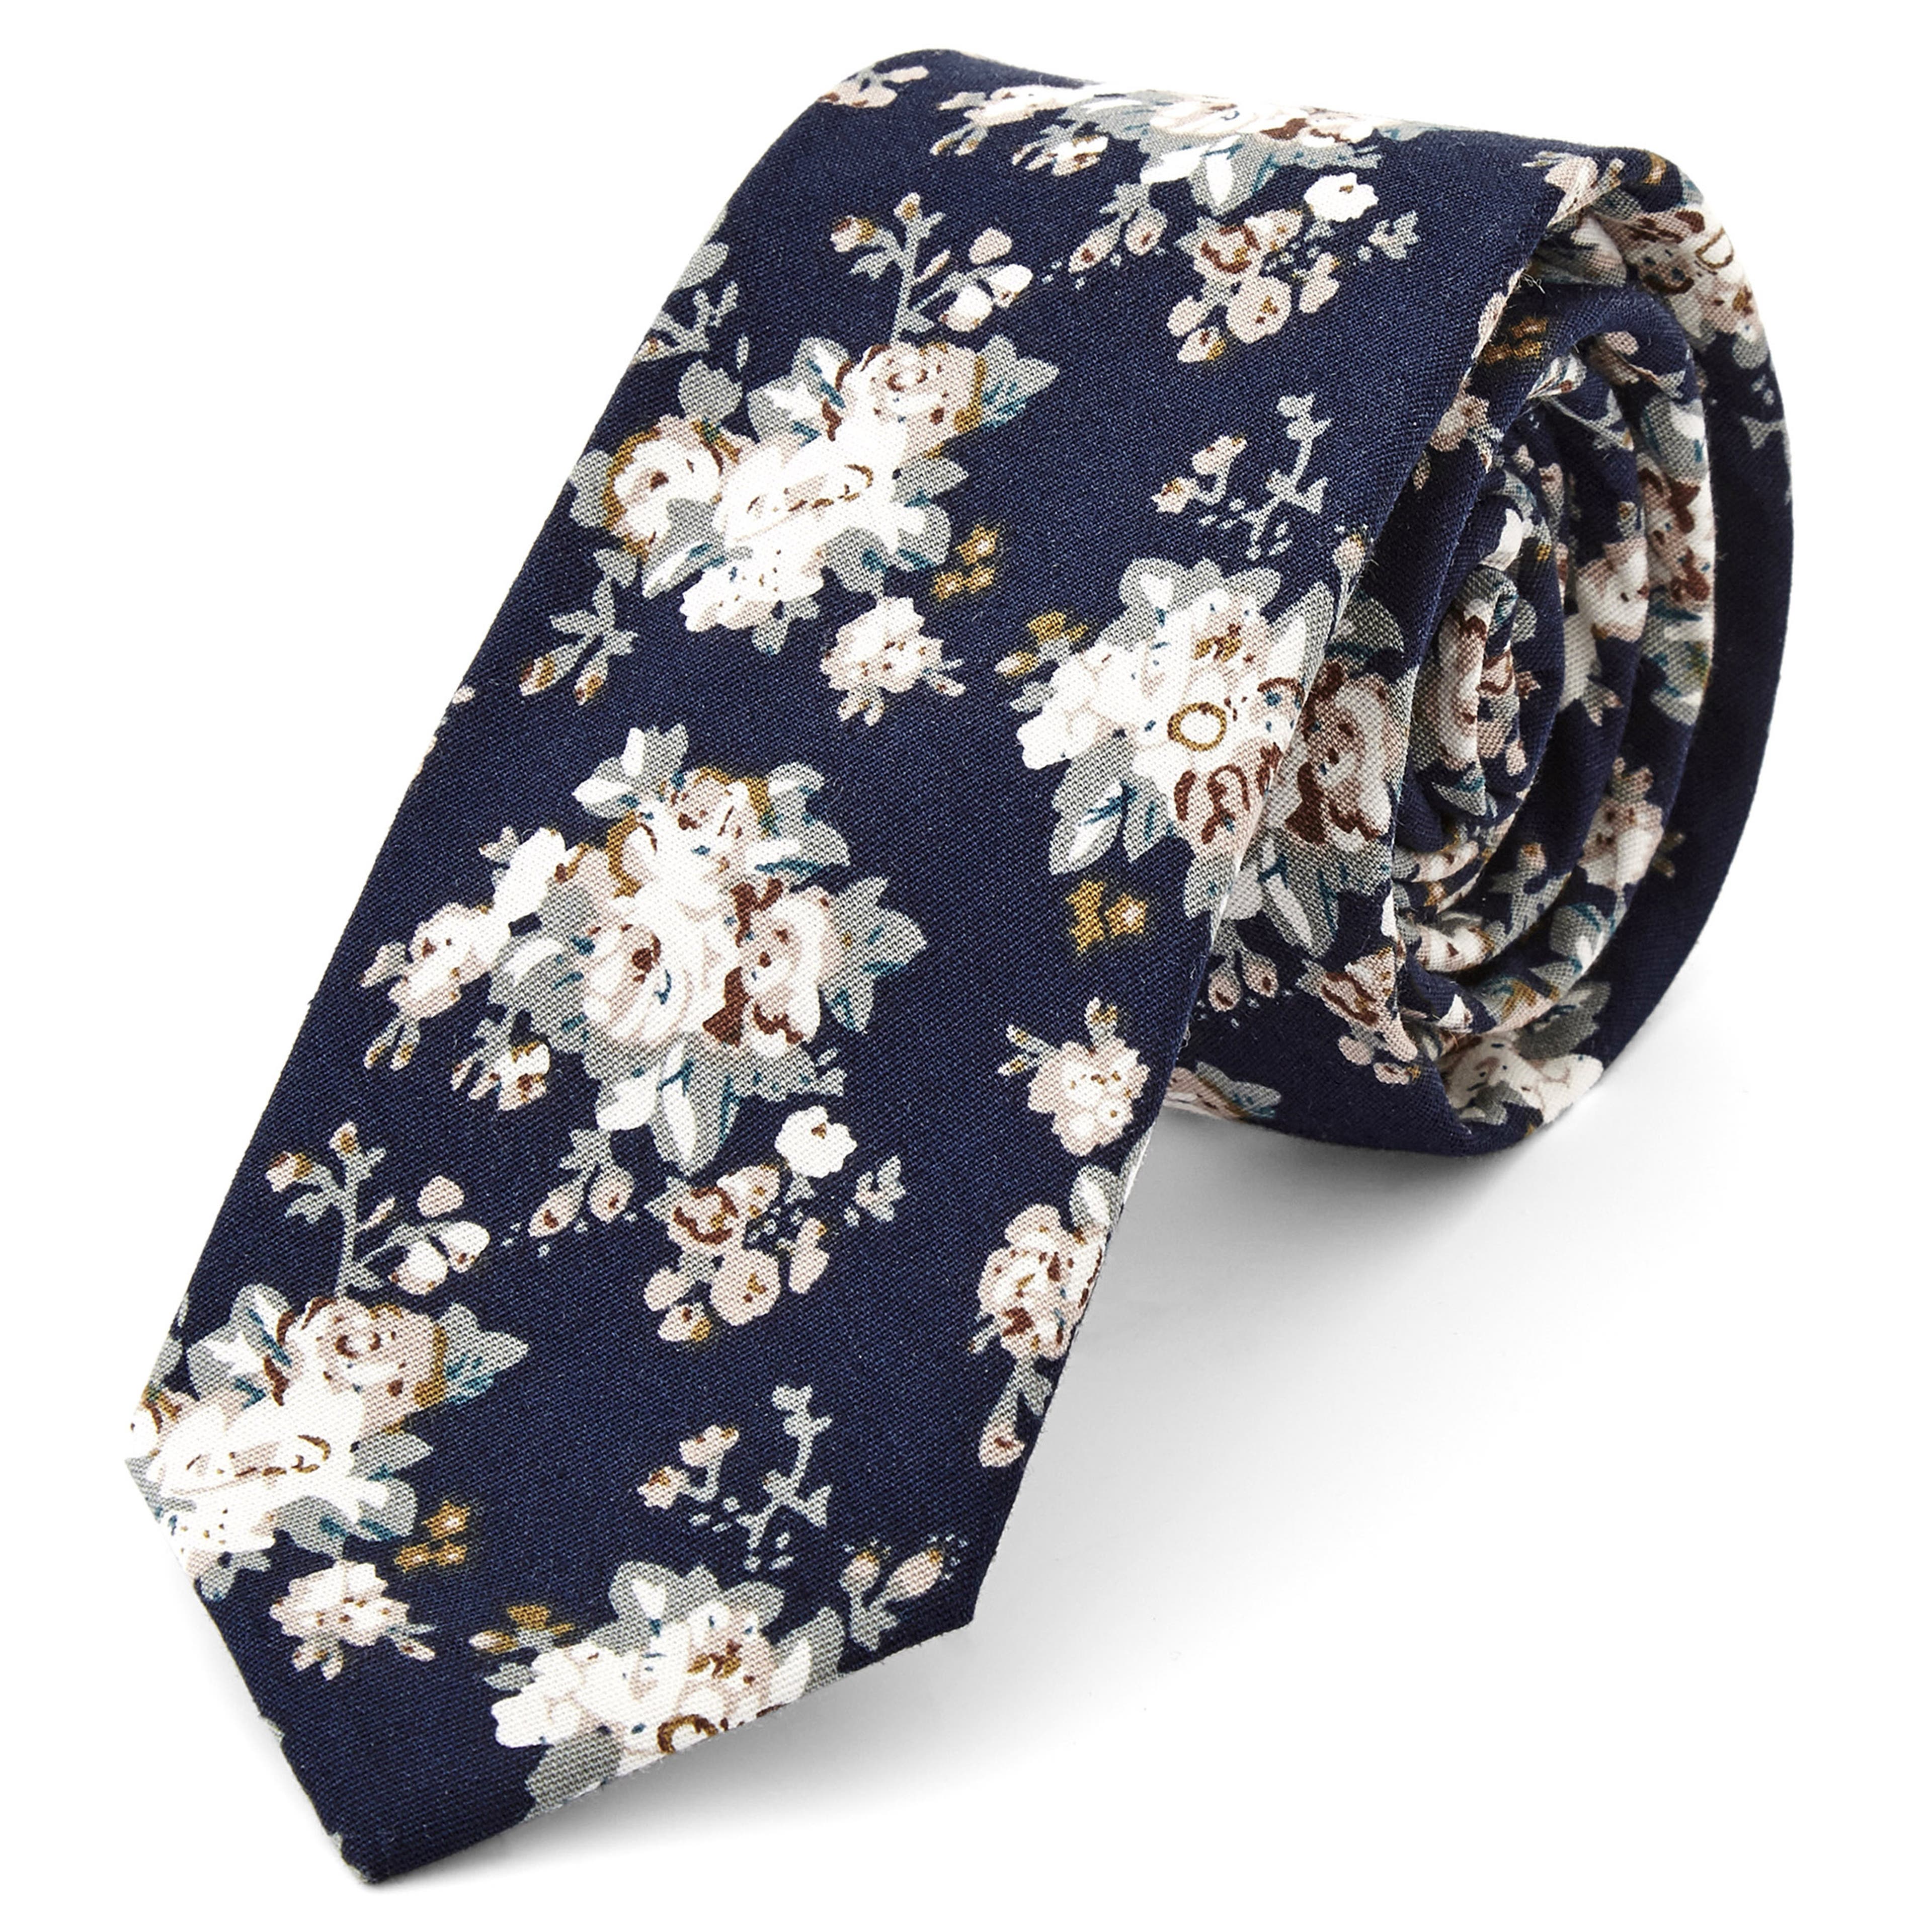 Blau-Weiße Krawatte mit Blumenmuster